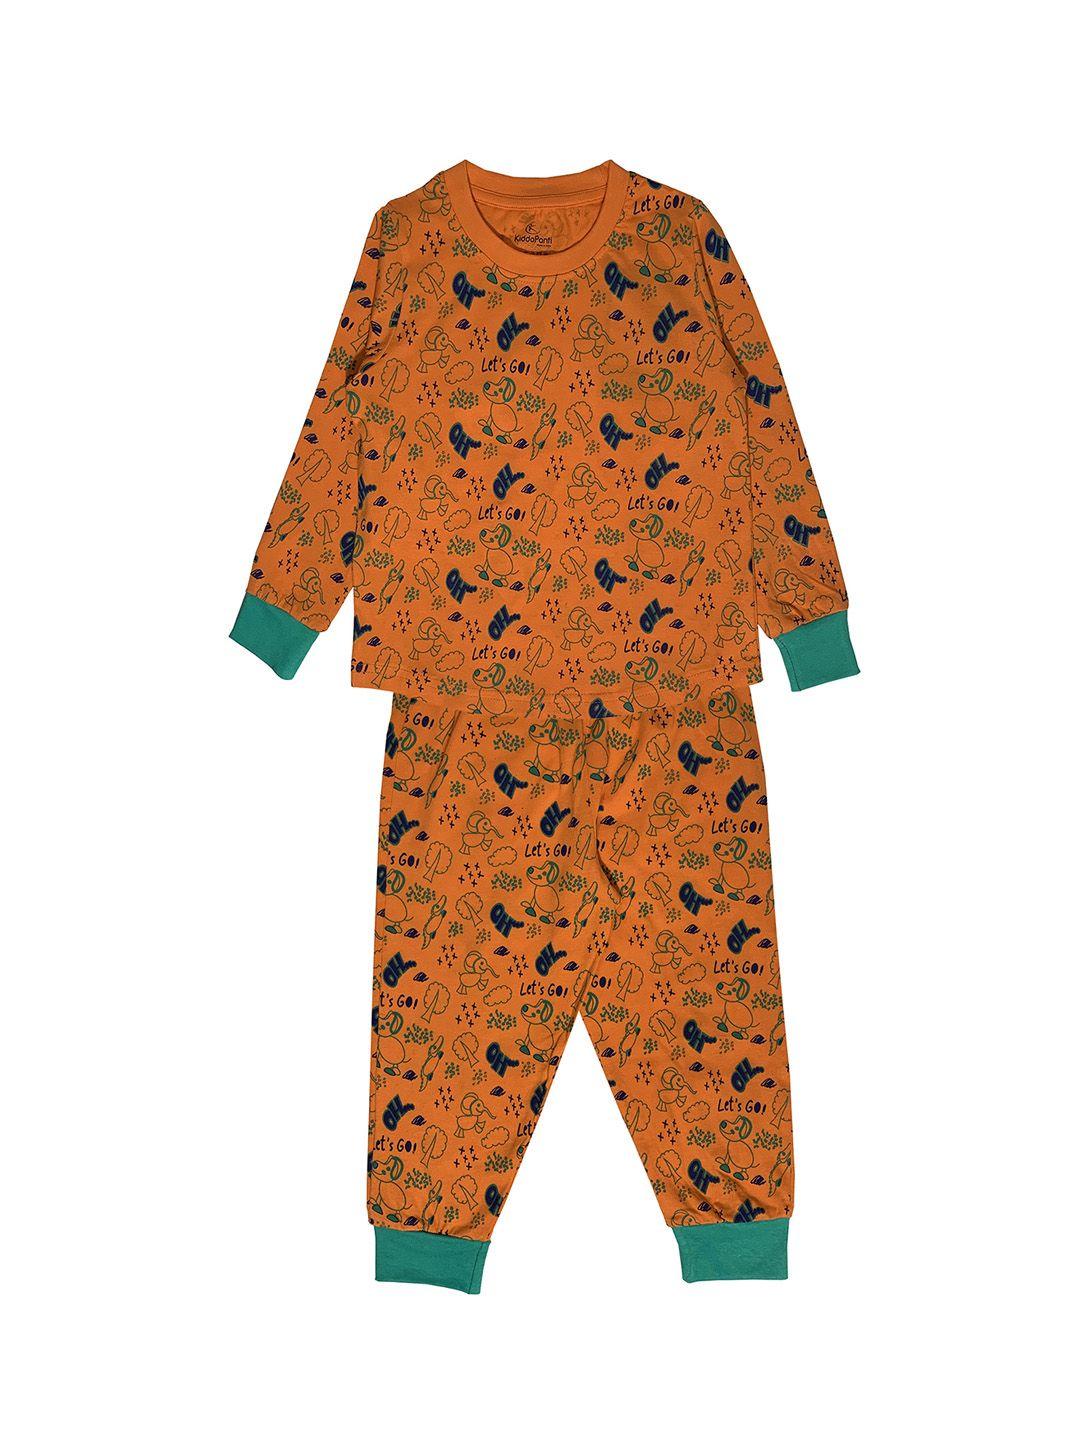 kiddopanti boys orange & green animal aop printed night suit